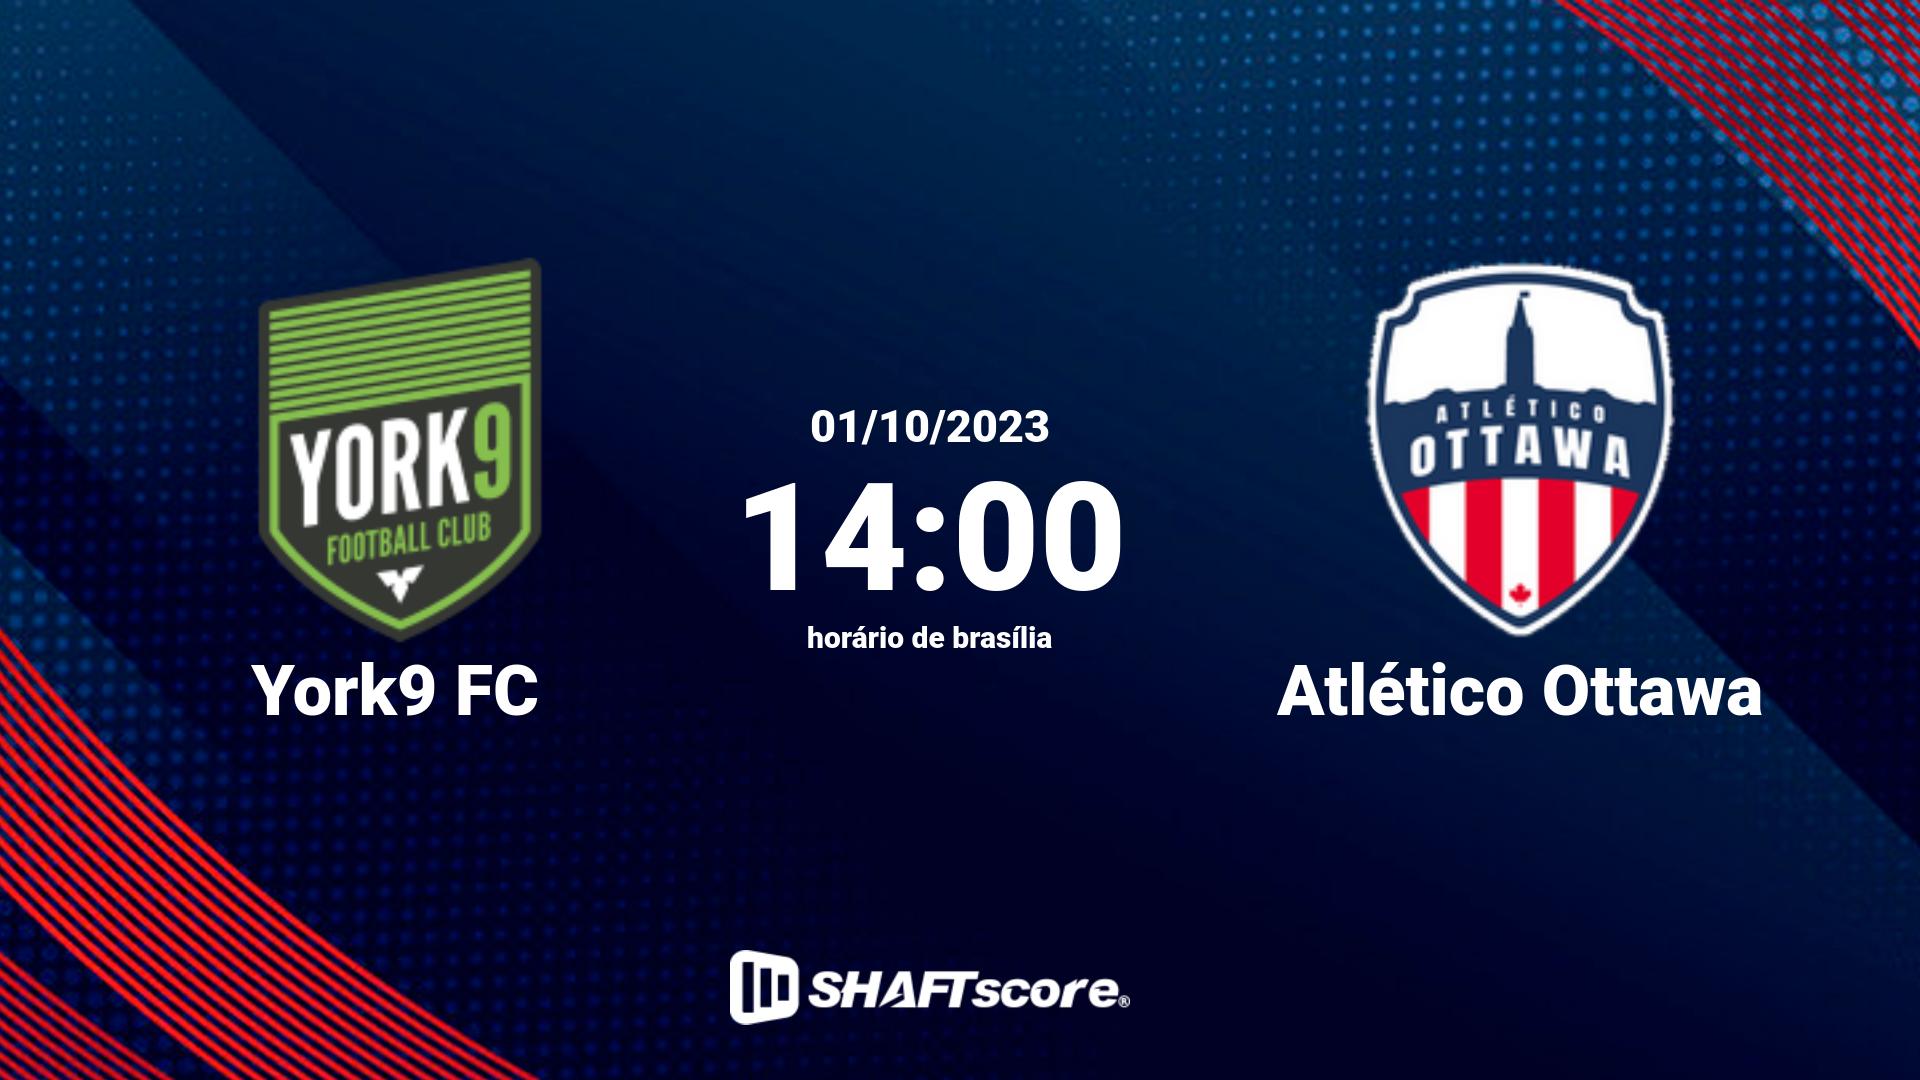 Estatísticas do jogo York9 FC vs Atlético Ottawa 01.10 14:00